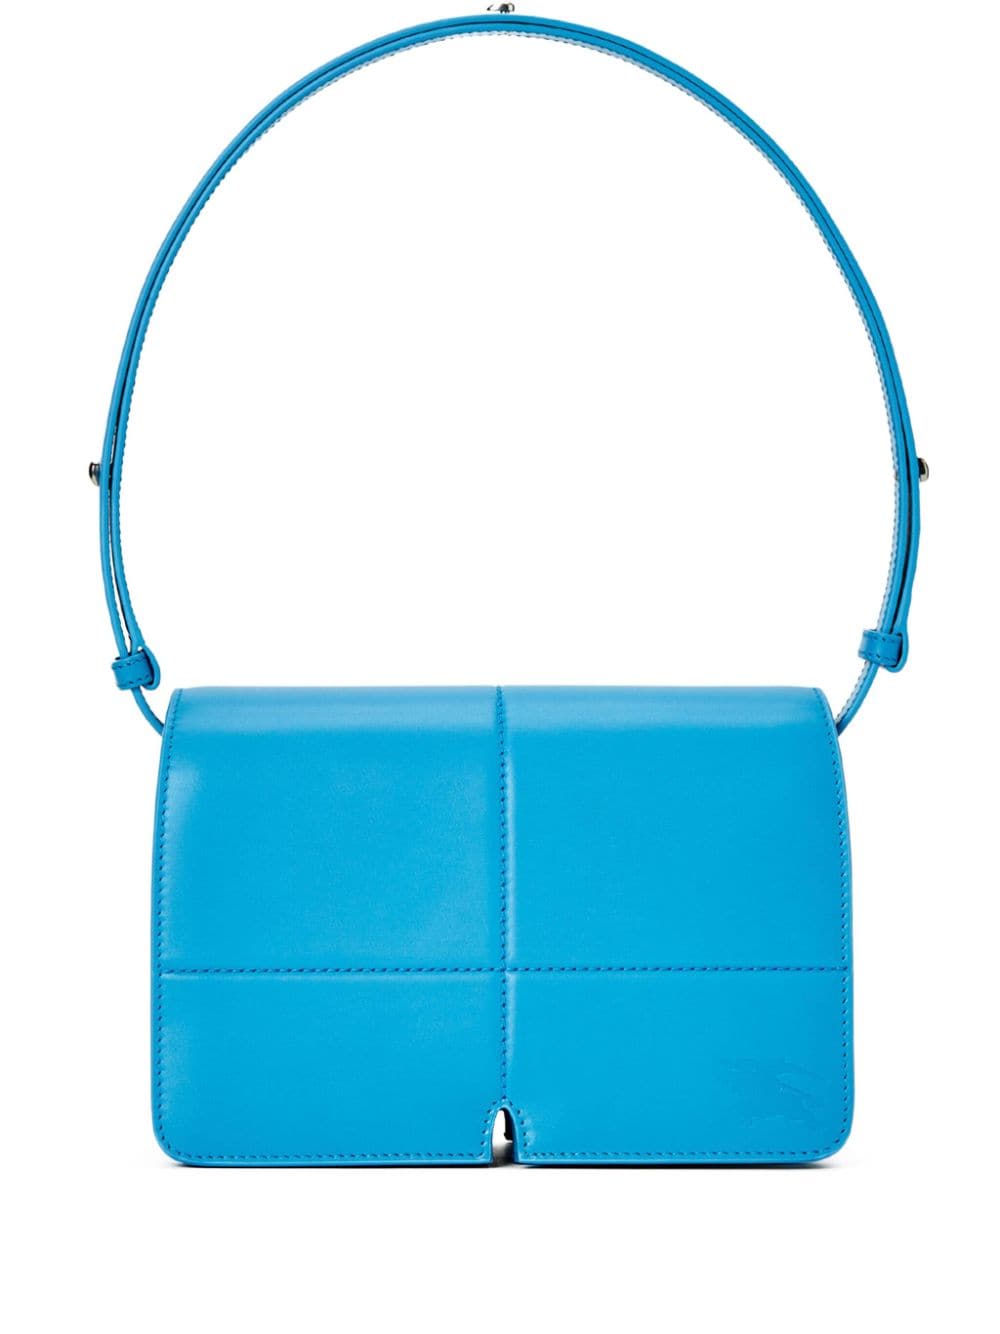 Burberry Leather Shoulder Bag In Blue